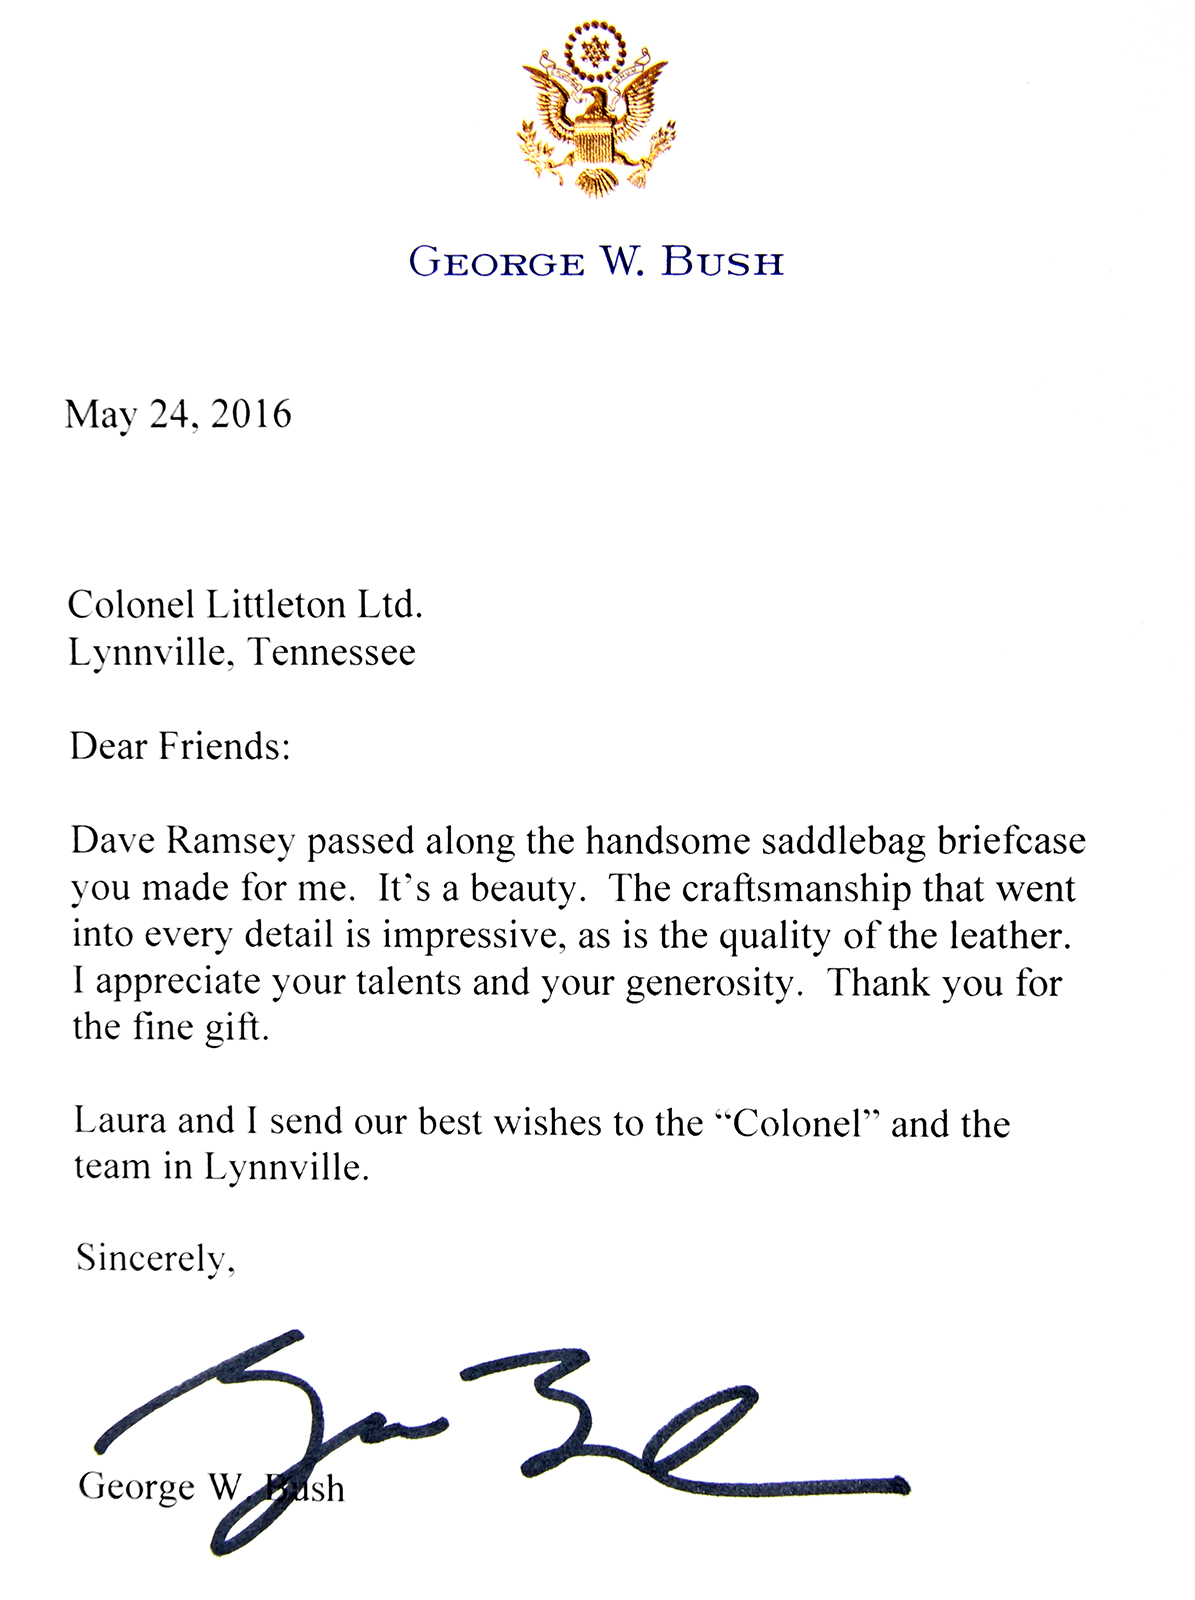 presidents day blog bush letter